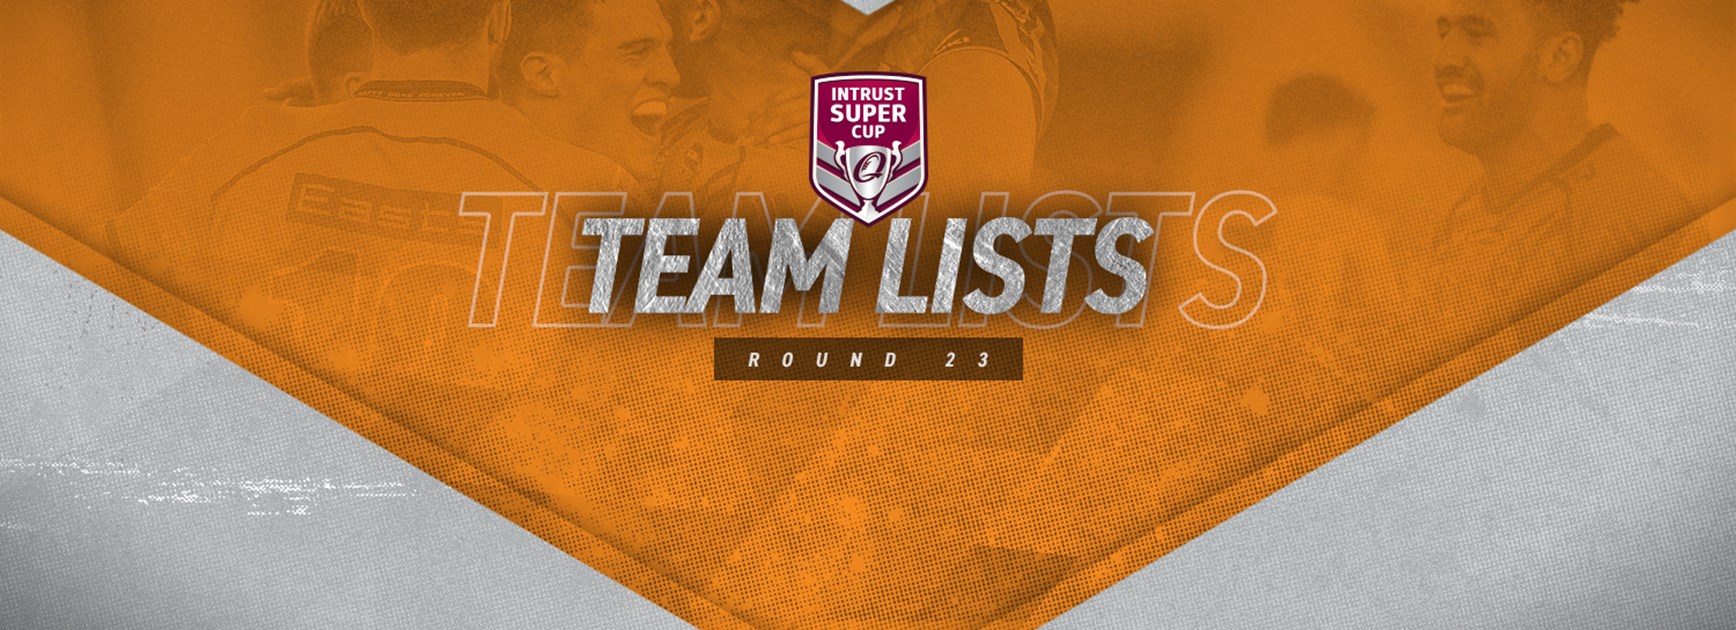 Intrust Super Cup Round 23 teams